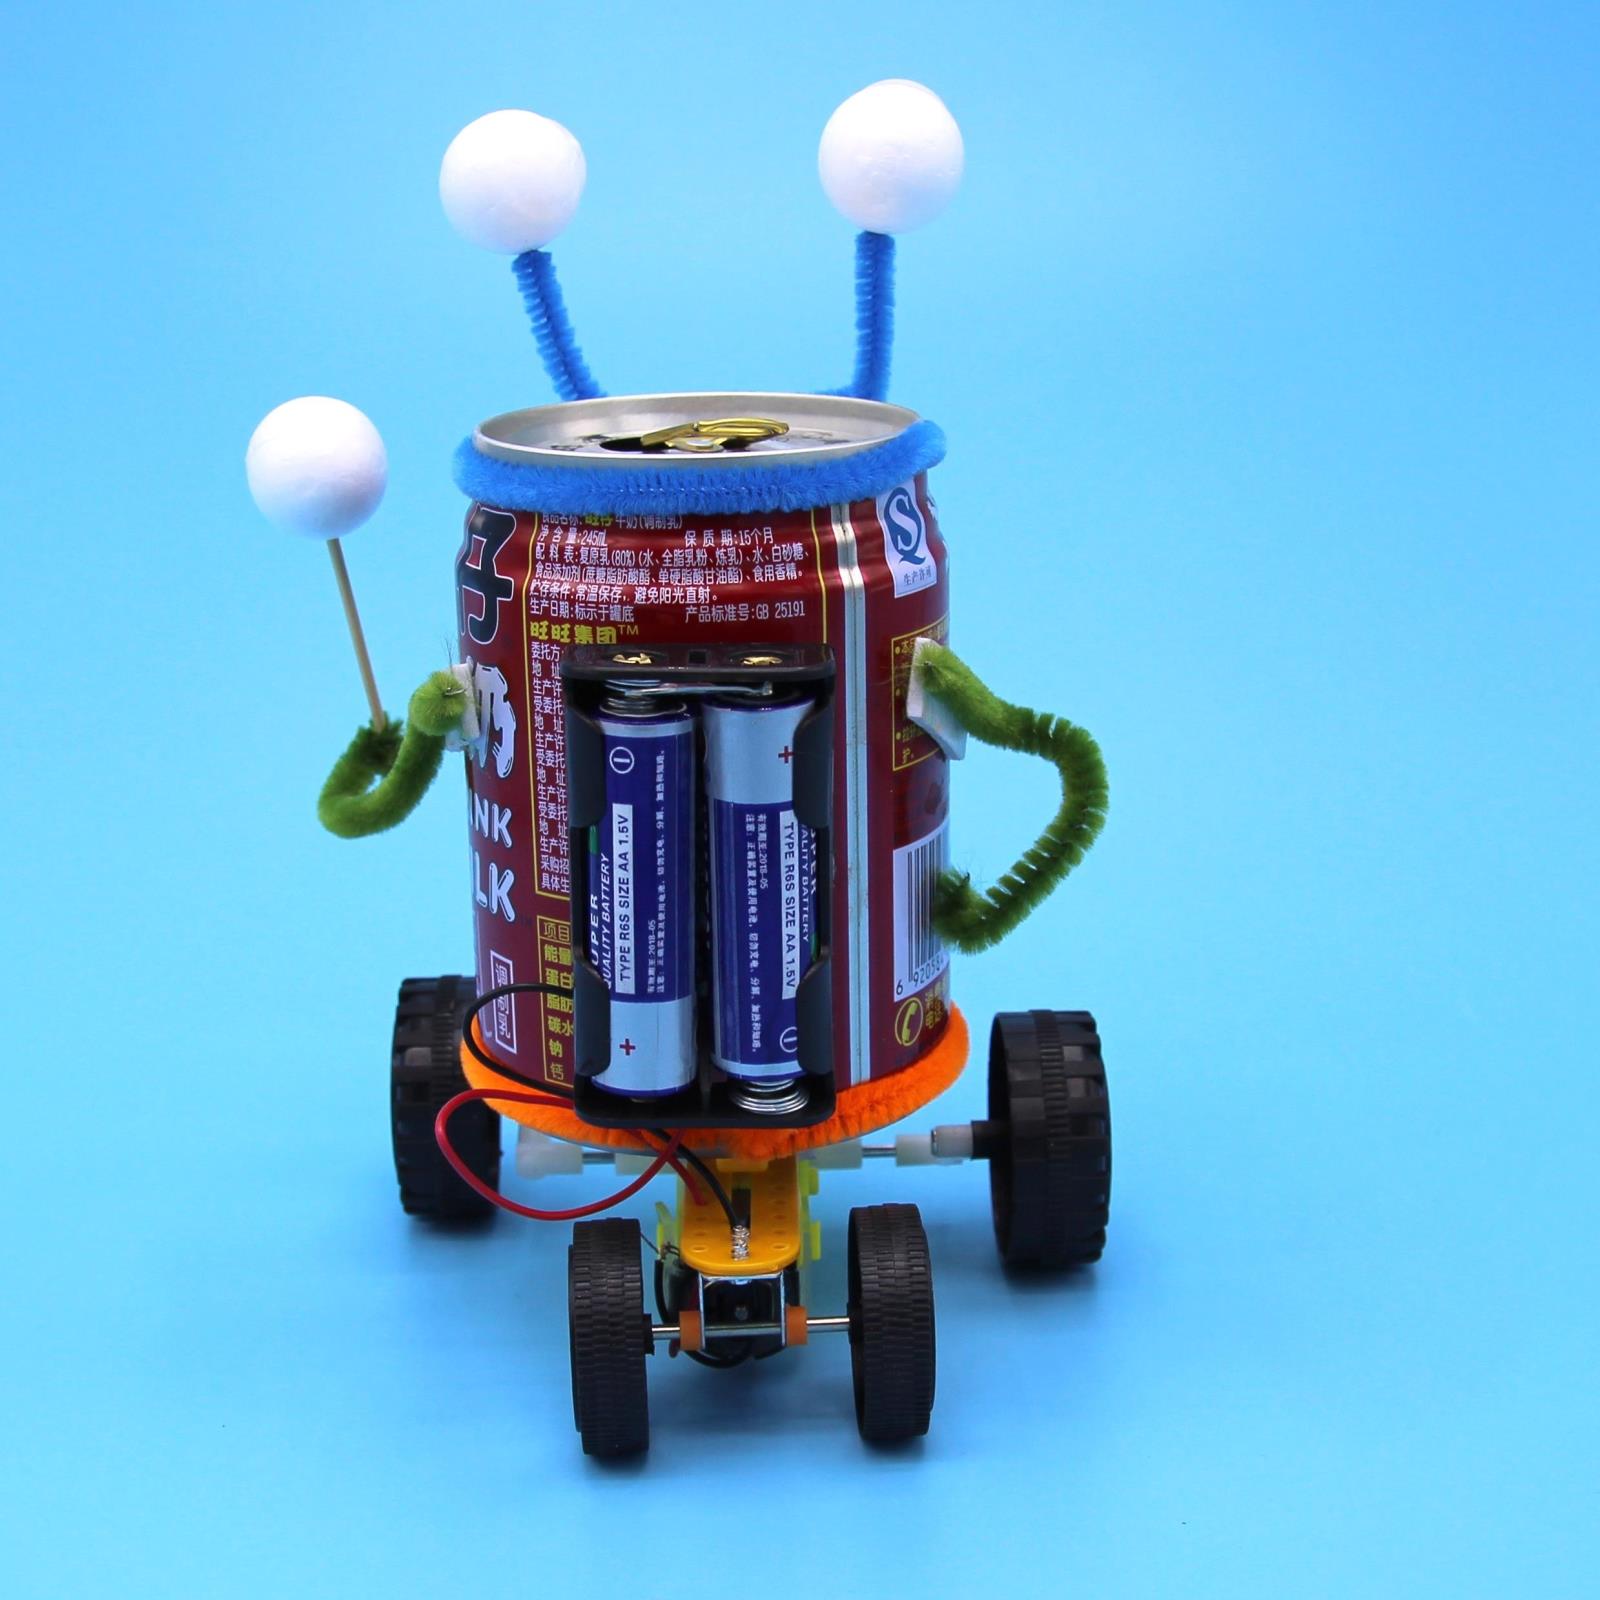 小学生科技制作易拉罐机器人diy手工发明创意环保科学实验